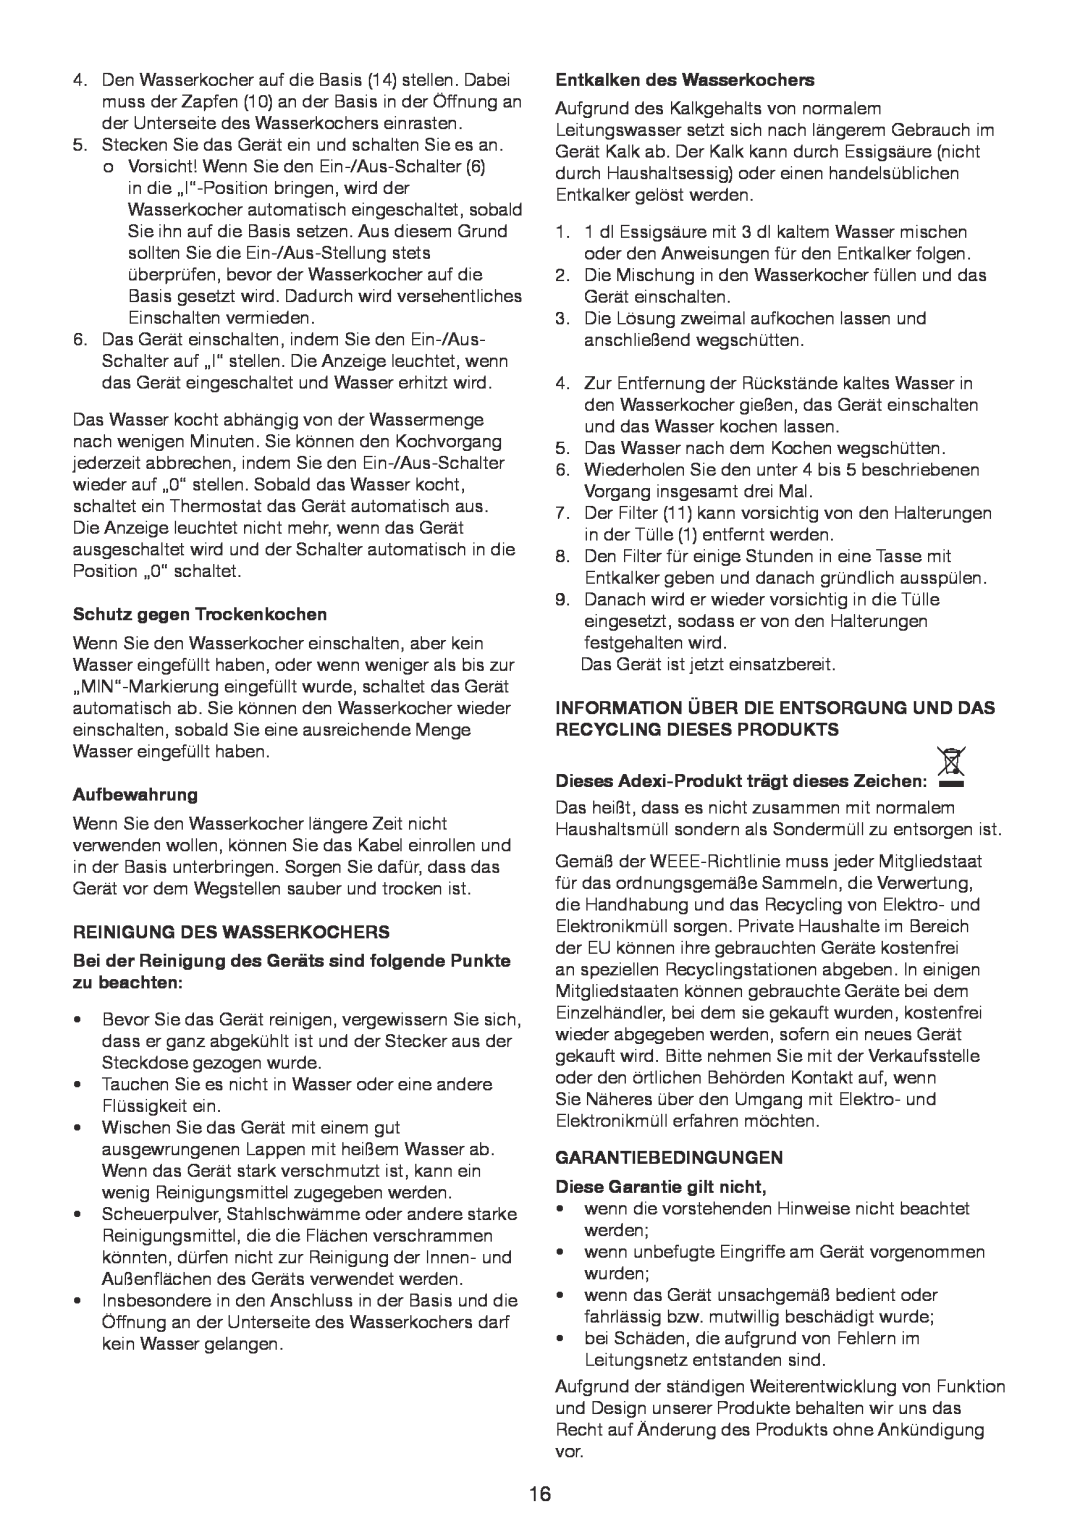 Exido 245-065 manual Schutz gegen Trockenkochen, Aufbewahrung, Reinigung Des Wasserkochers, Entkalken des Wasserkochers 